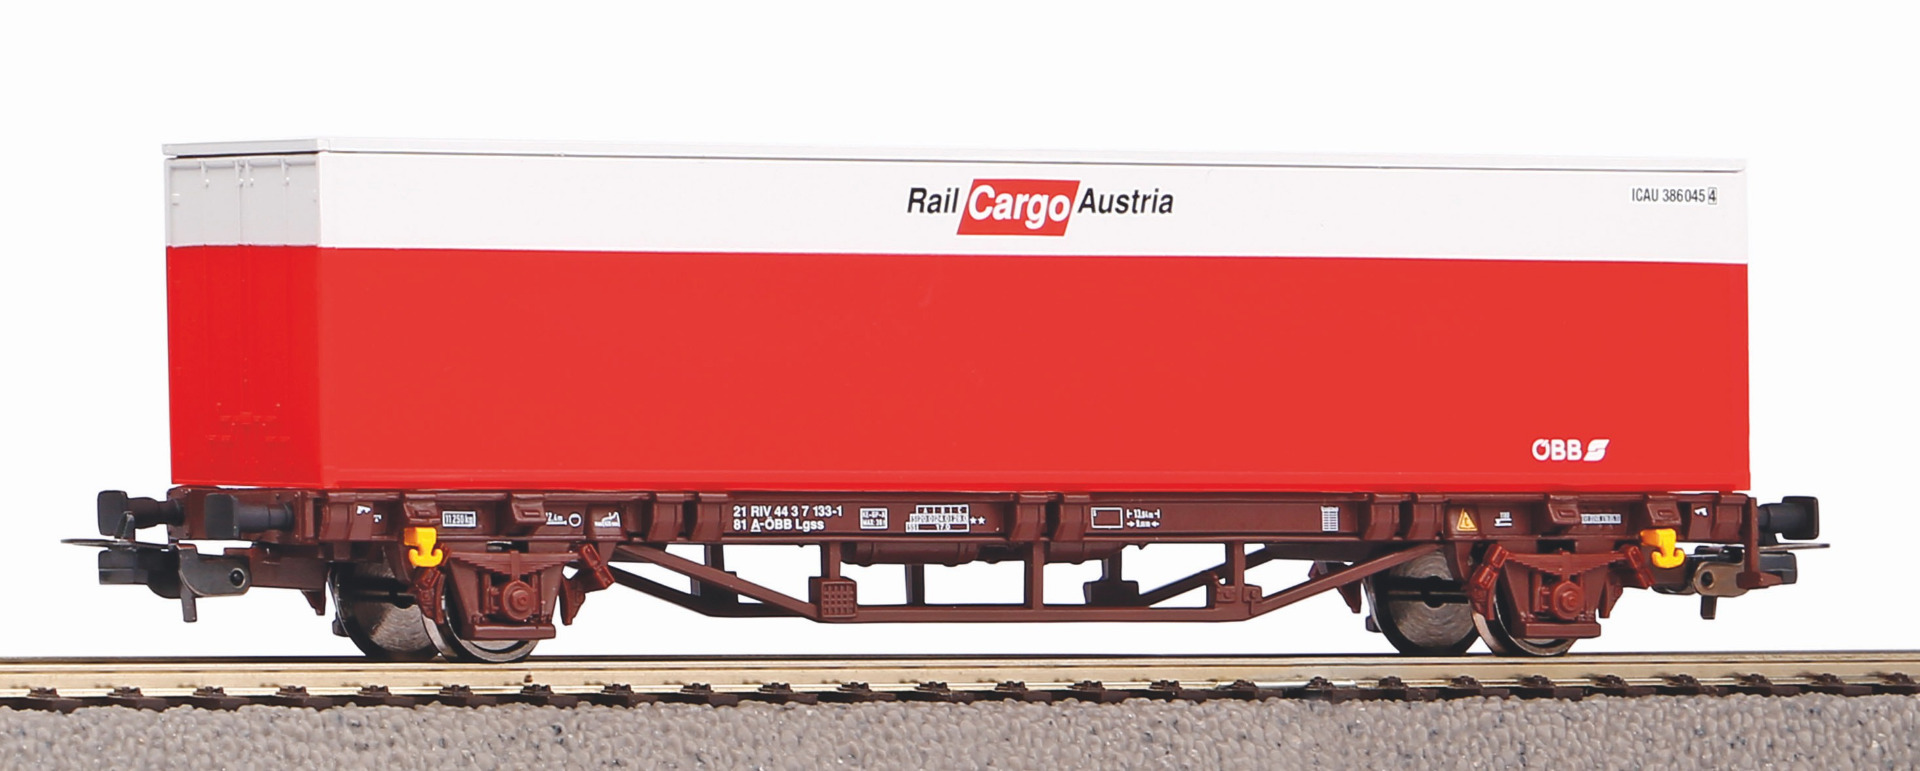 Piko 57762 H0 ÖBB containerwagen Rail Cargo Austria